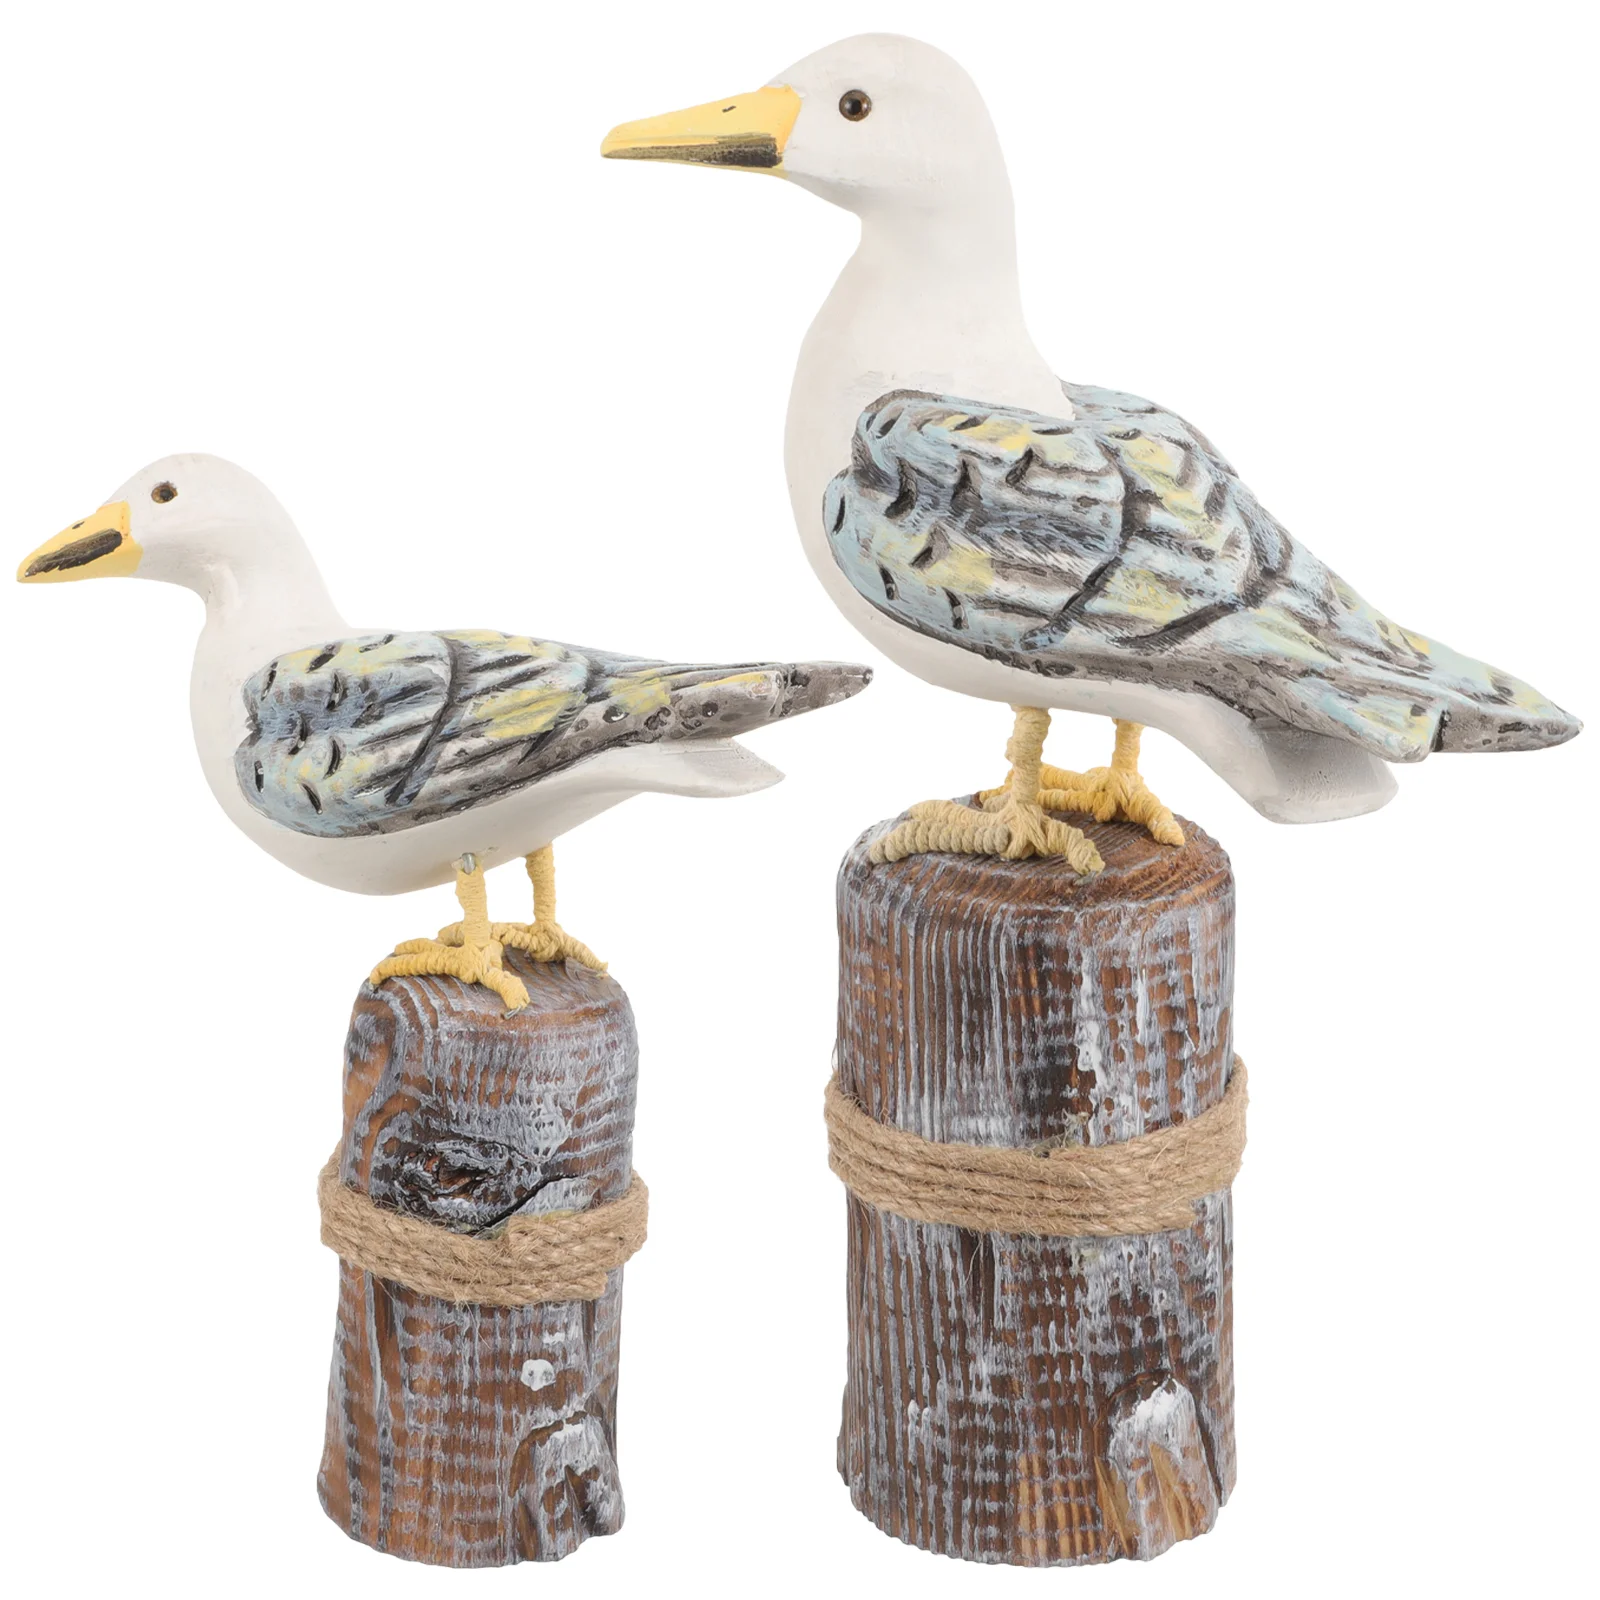 

2 шт., деревянные фигурки в форме птицы в средиземноморском стиле